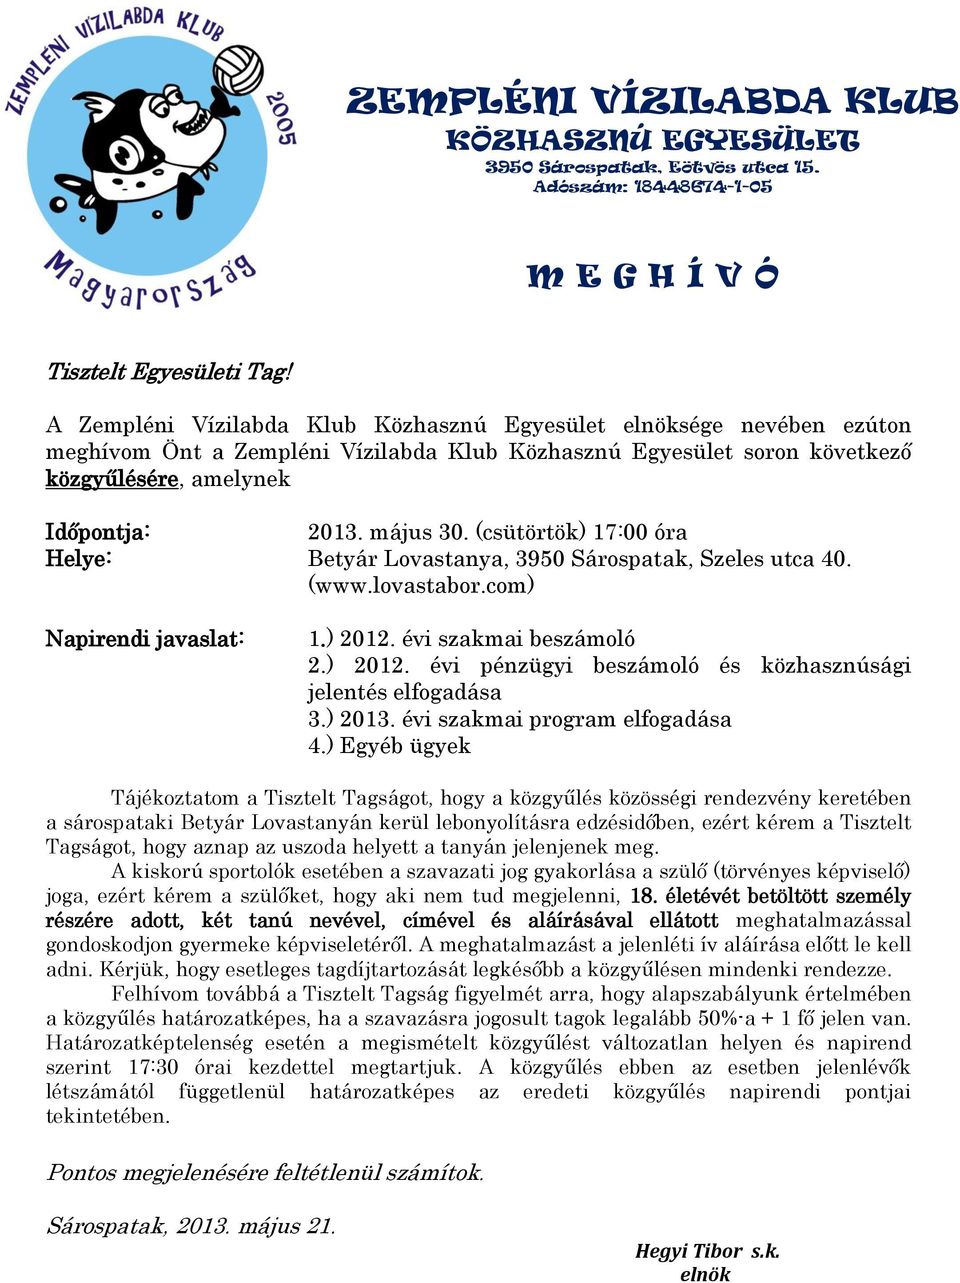 (csütörtök) 17:00 óra Helye: Betyár Lovastanya, 3950 Sárospatak, Szeles utca 40. (www.lovastabor.com) Napirendi javaslat: 1.) 2012. évi szakmai beszámoló 2.) 2012. évi pénzügyi beszámoló és közhasznúsági jelentés elfogadása 3.